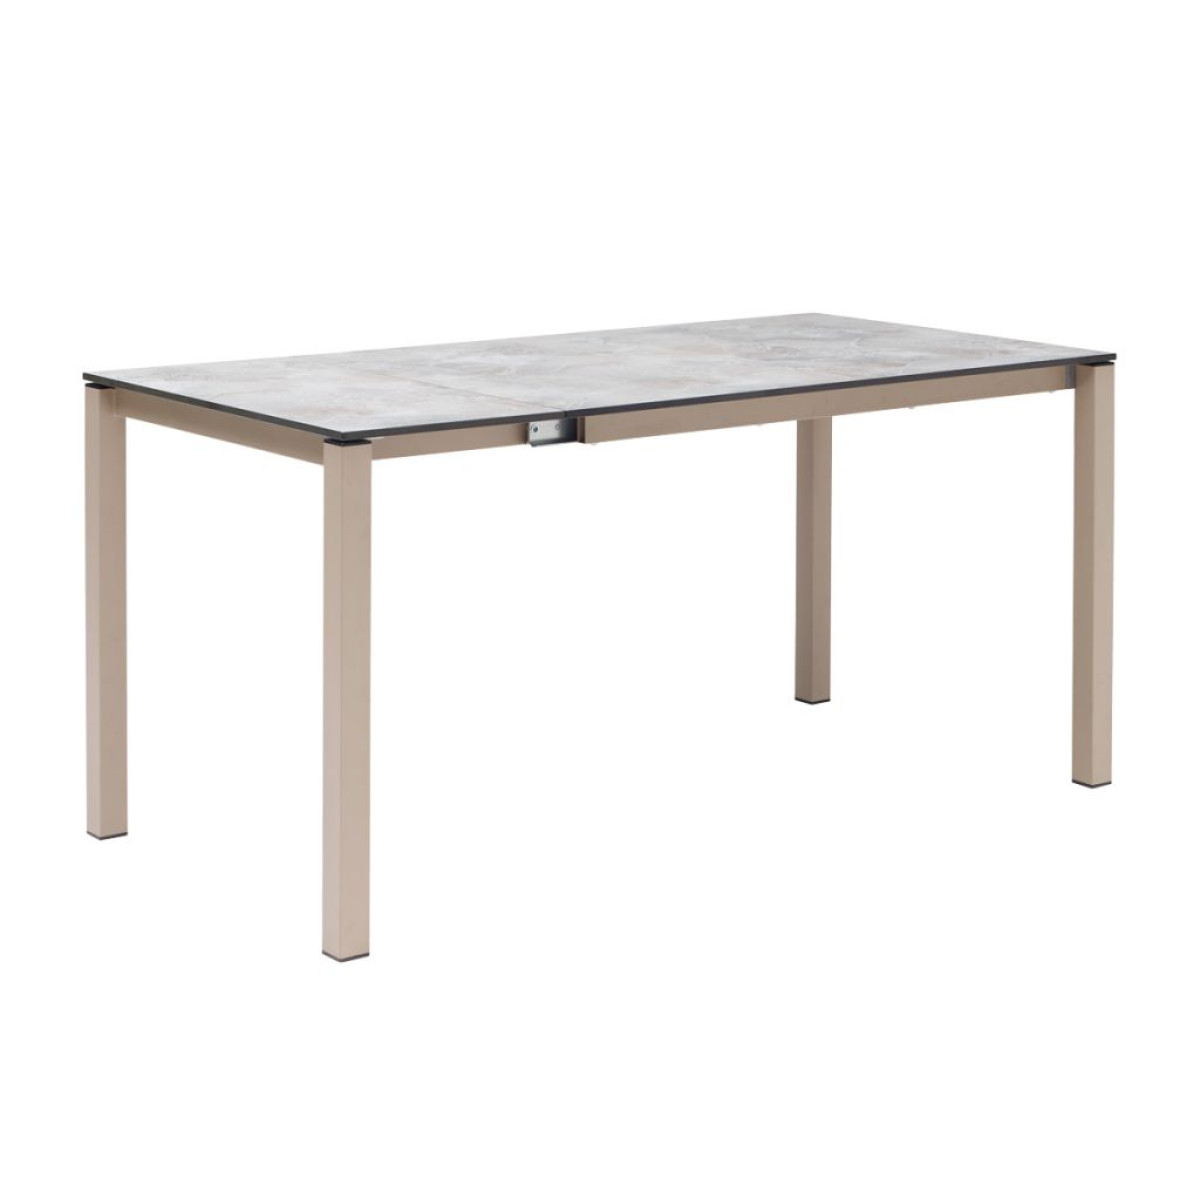 Extendible table Pranzo 120/160/200